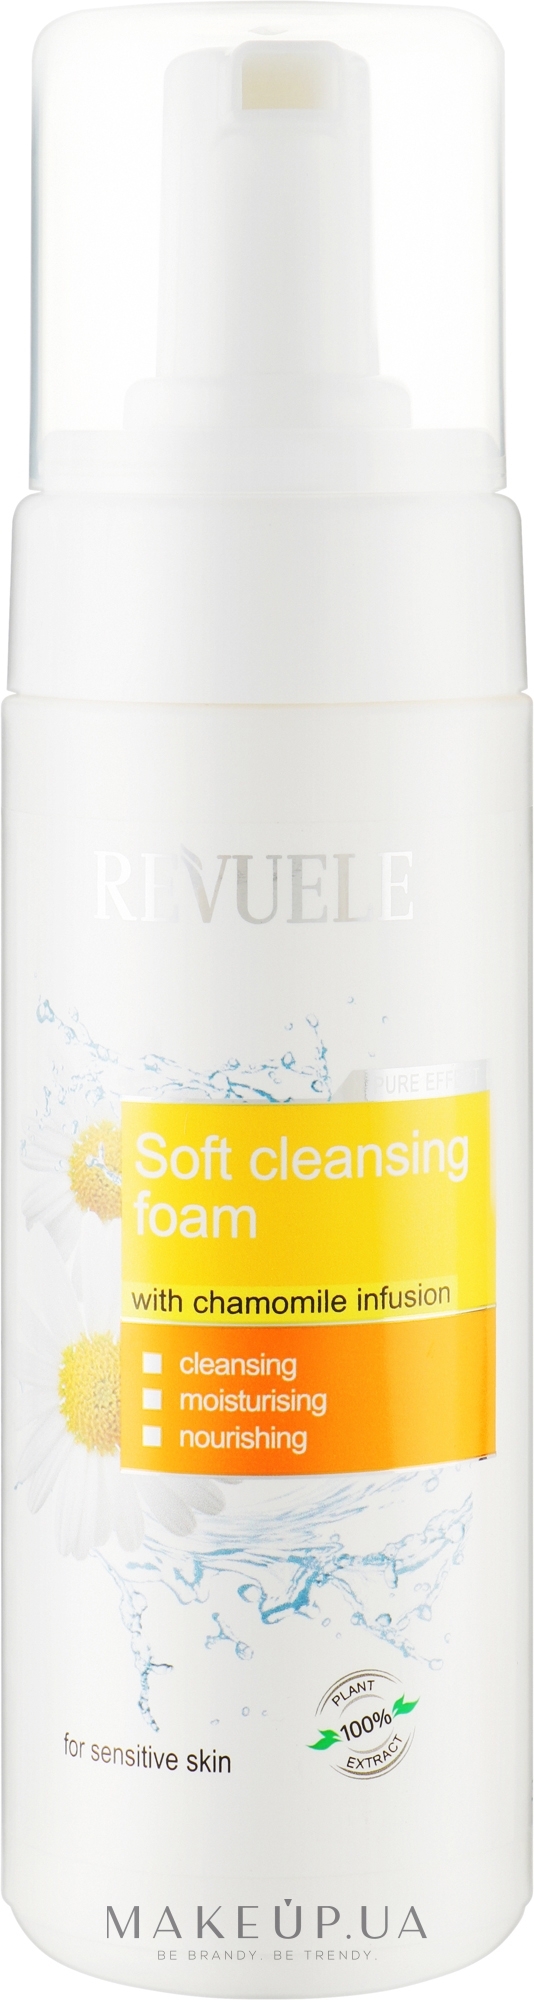 Воздушная пенка для умывания с настоем ромашки - Revuele Gentle Cleansing Foam With Chamomile Infusion — фото 150ml